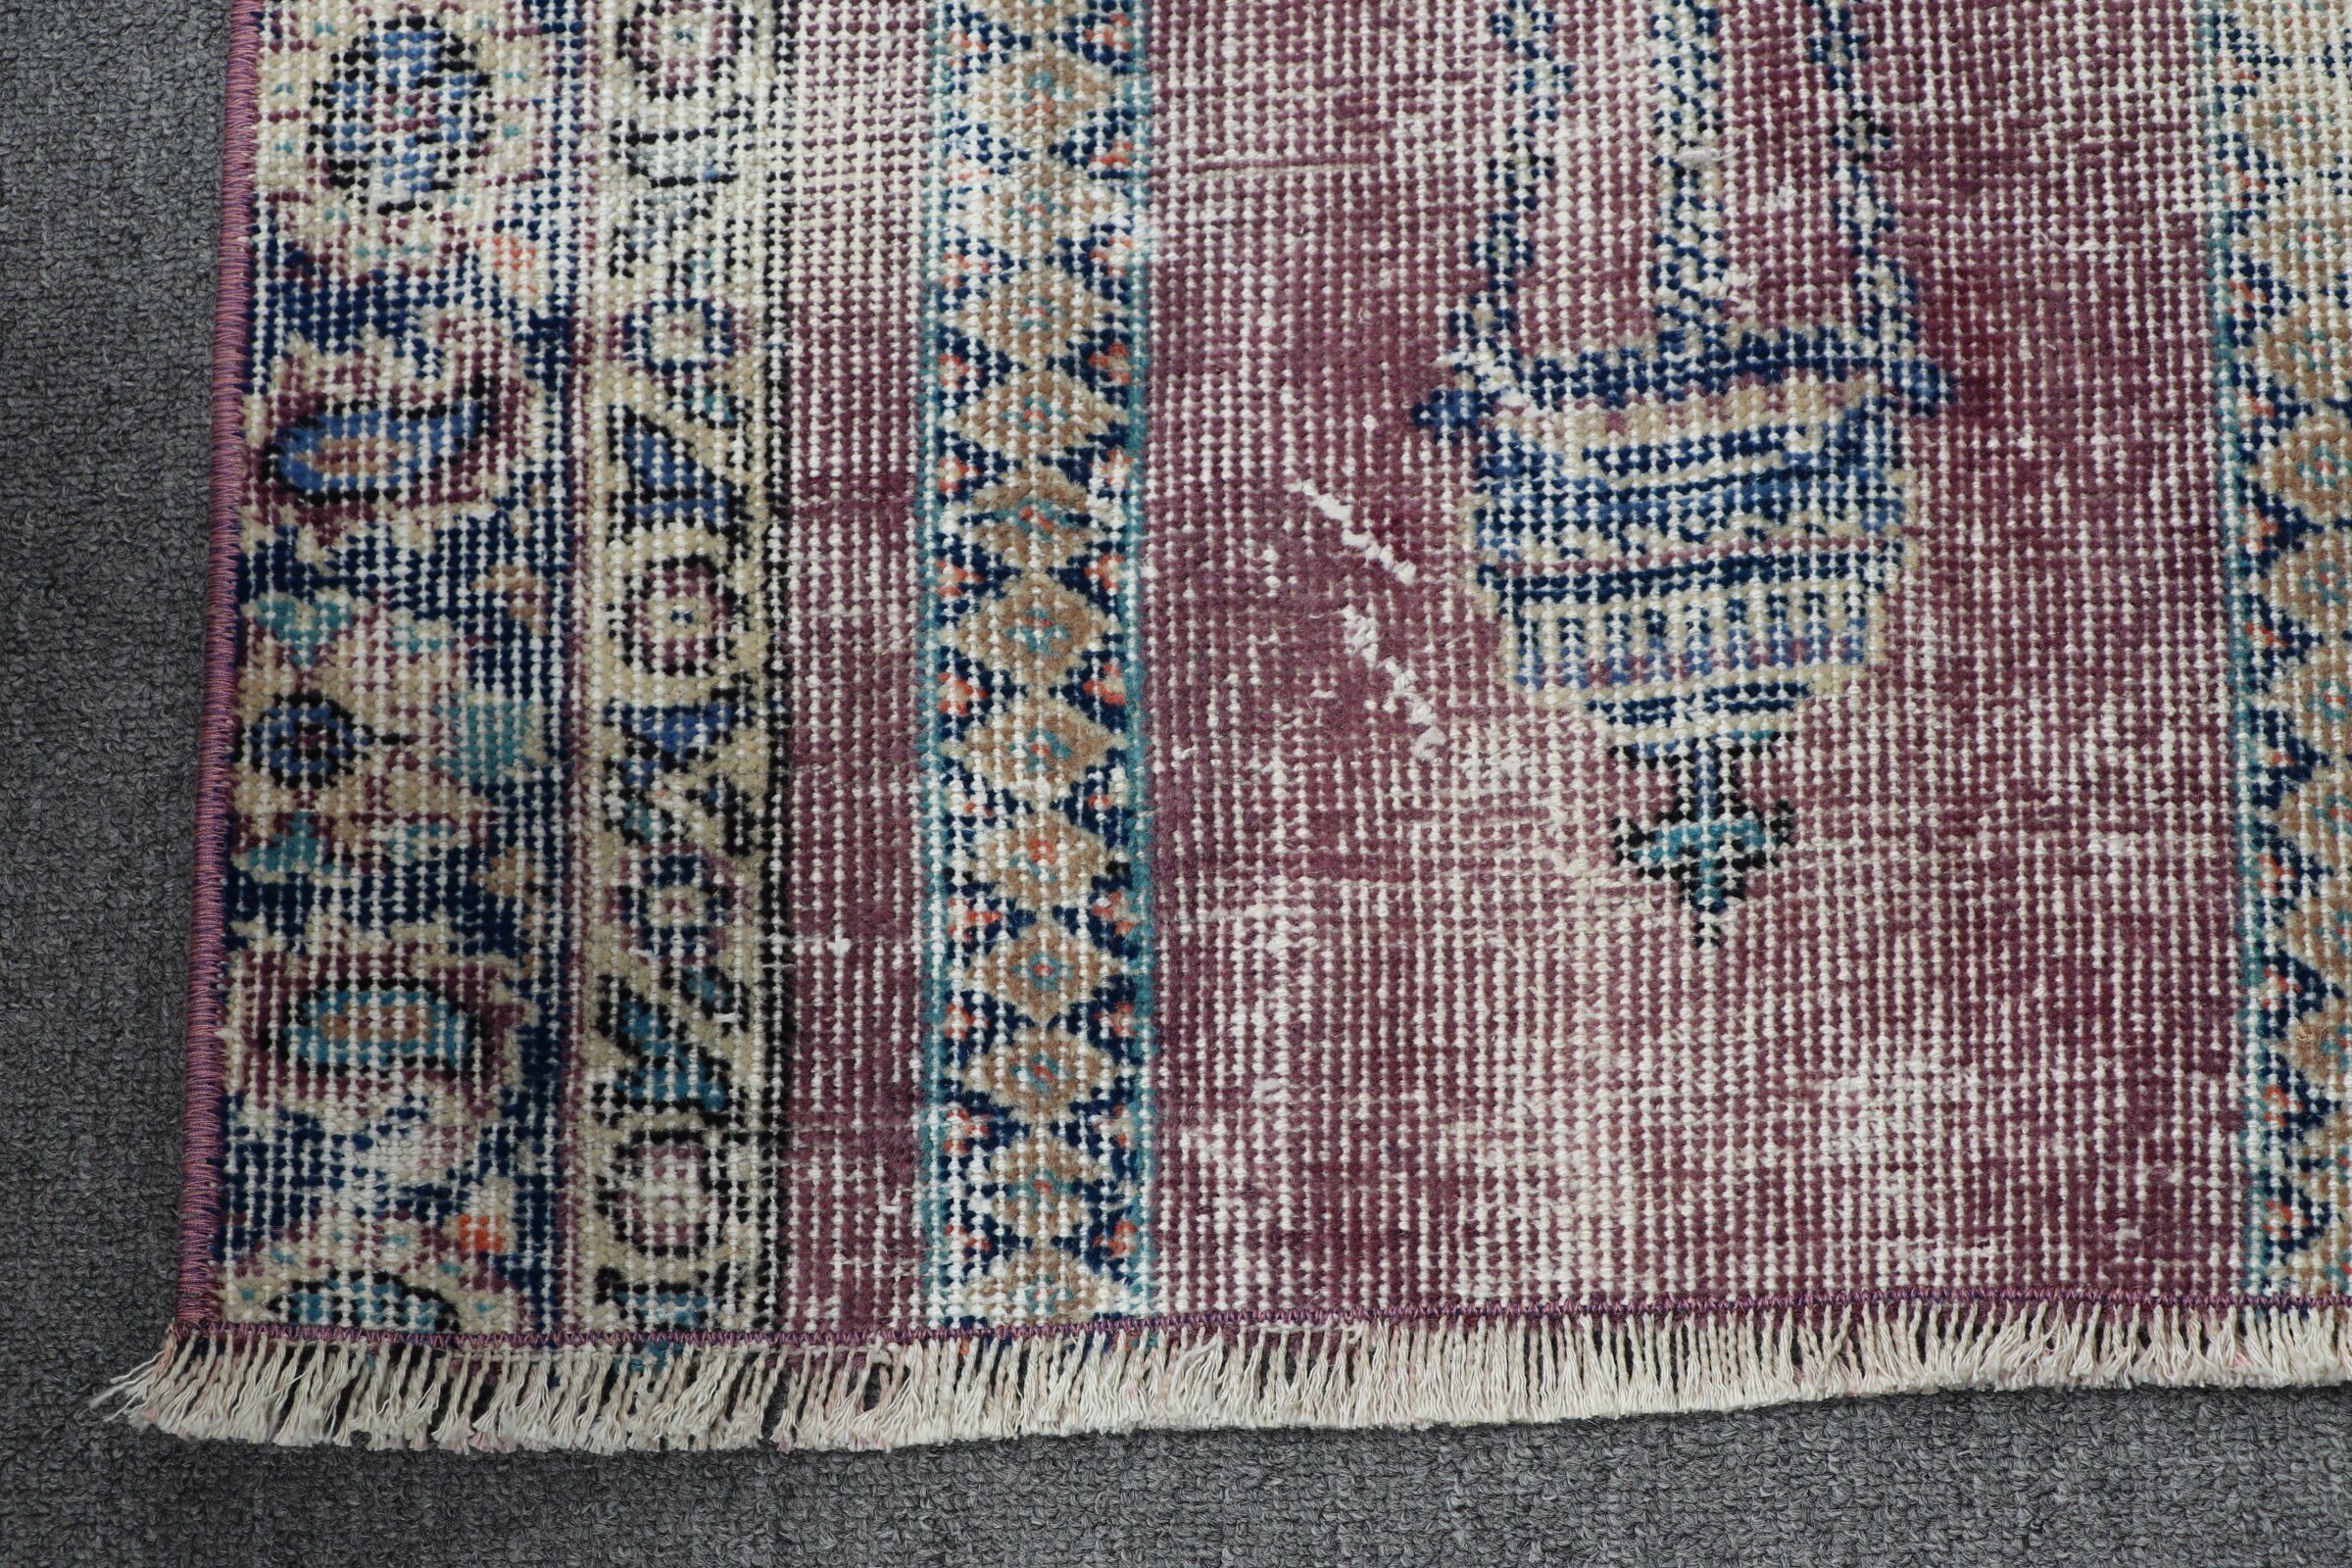 Vintage Rug, Turkish Rug, Car Mat Rug, Floor Rug, Oriental Rugs, Wall Hanging Rug, Purple  1.9x2.8 ft Small Rug, Bedroom Rugs